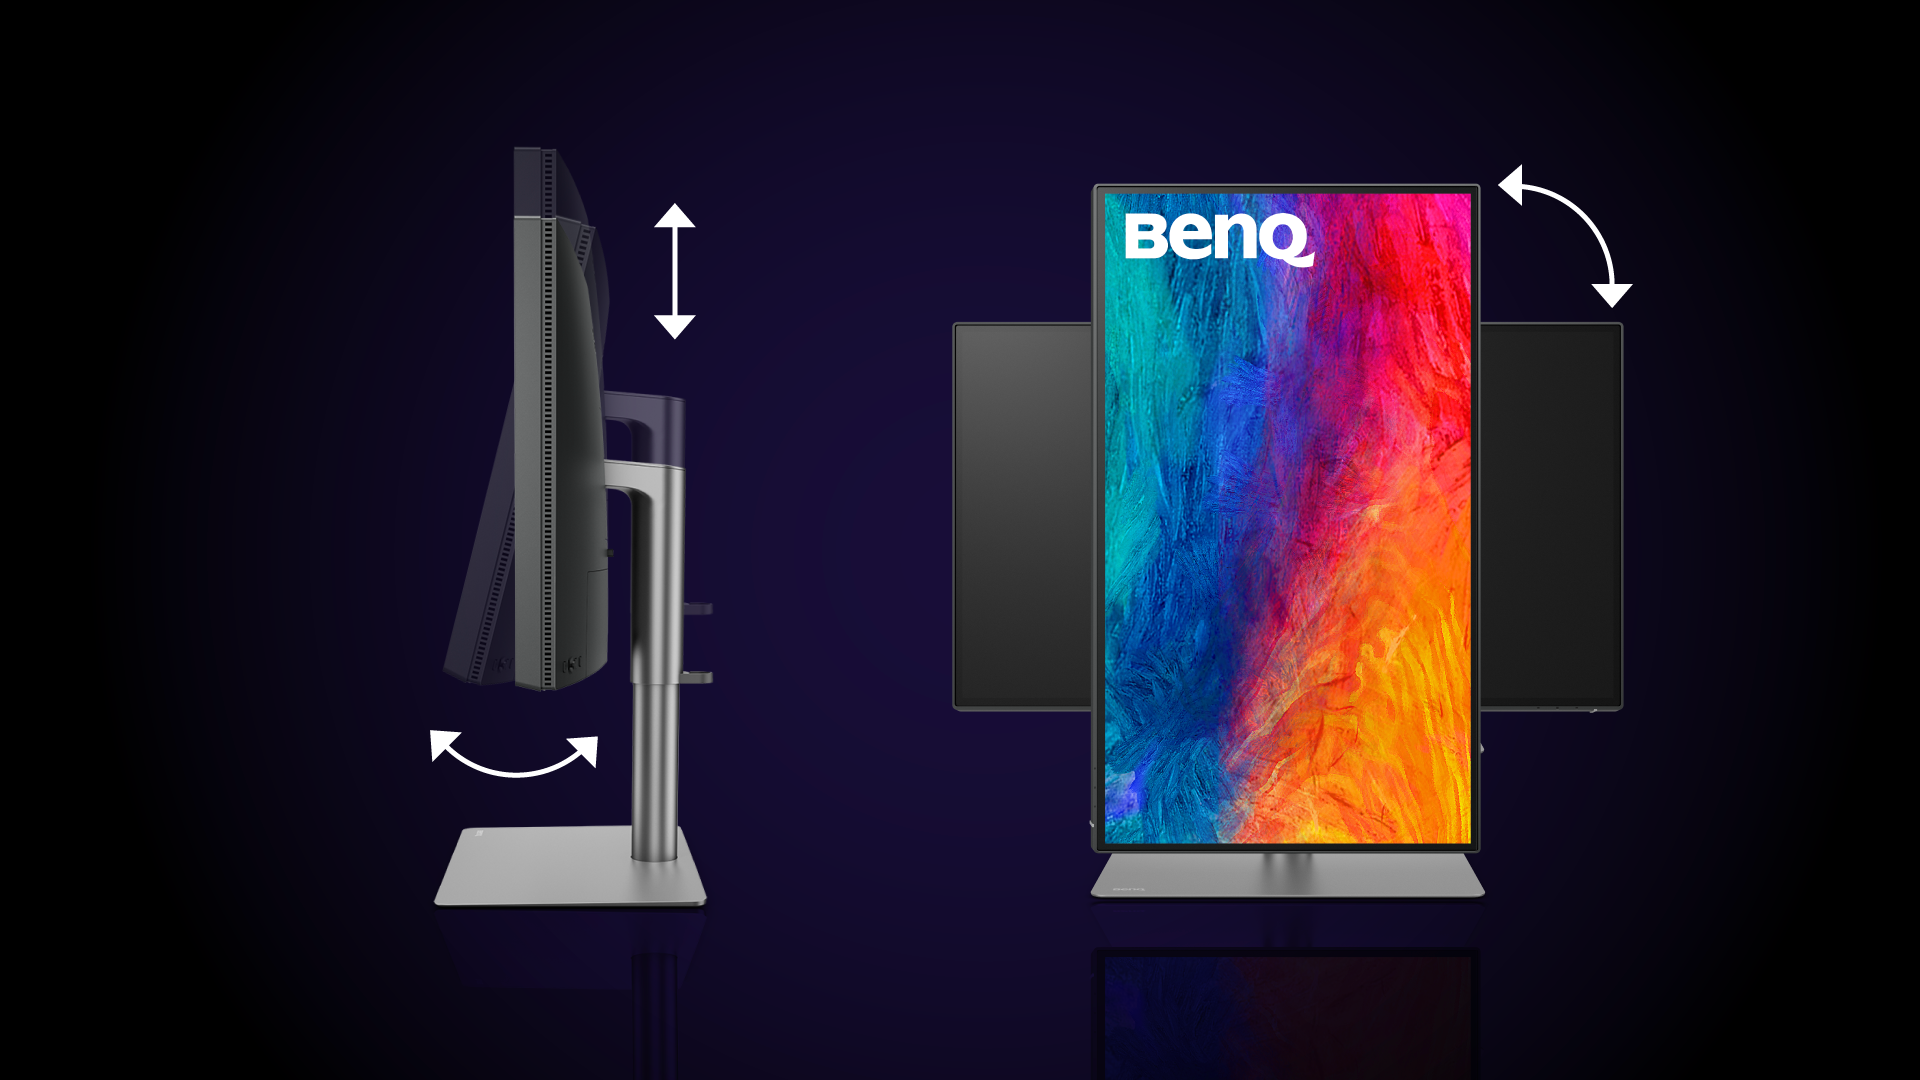 Monitory BenQ pro uživatele zařízení Mac jsou vybaveny pokročilým stojanem, který umožňuje pečlivě přizpůsobit umístění monitoru. Kromě toho stojan také skvěle vypadá a snadno zapadne do každého prostředí, jehož ústředním prvkem je zařízení Mac. Díky možnosti naklonění, natočení do stran, otočení na výšku a nastavení výšky si budete moci dopřát naprosto ideální vizuální zážitek. Ať už pracujete na čemkoli, správný úhel a umístění monitoru zvyšuje pohodlí, podporuje produktivitu a snižuje pravděpodobnost vzniku nepříjemných problémů, jako je únava očí nebo bolest za krkem. 